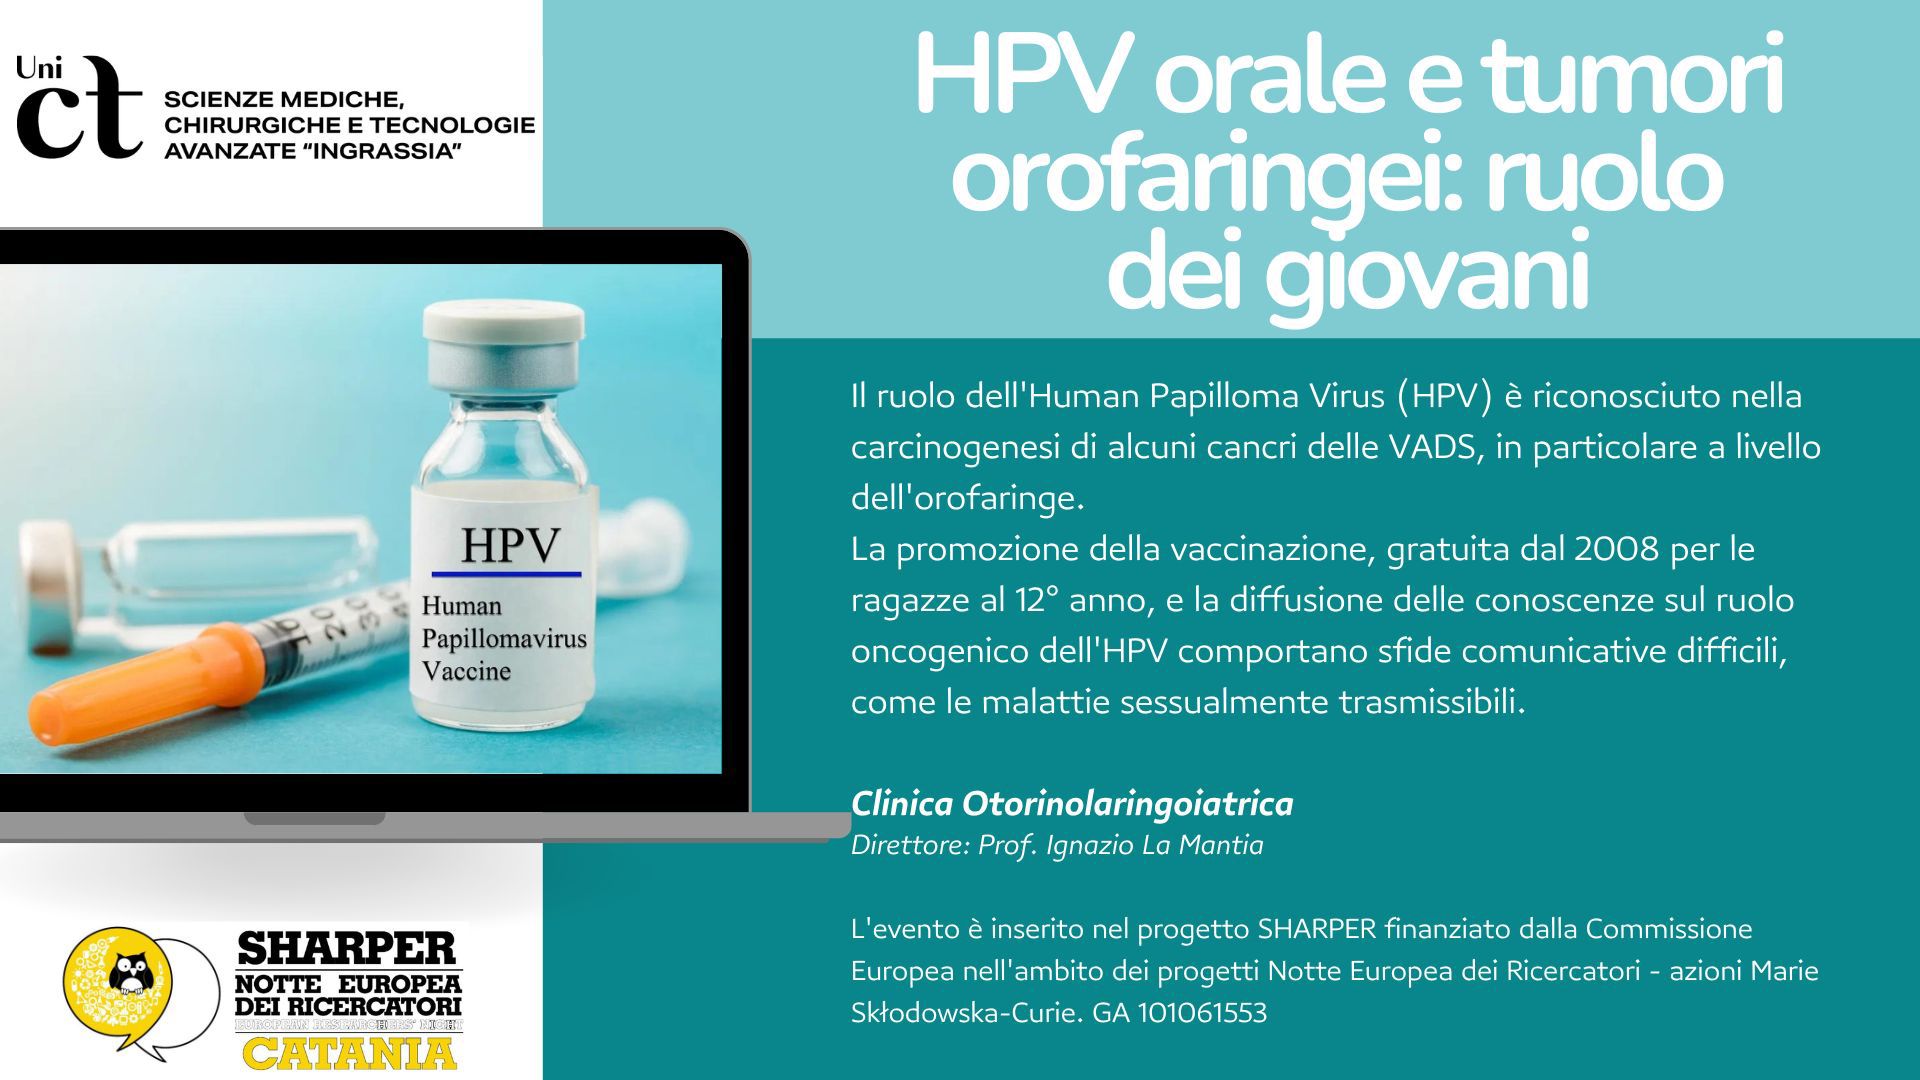 HPV ORALE E TUMORI OROFARINGEI: RUOLO DEI GIOVANI